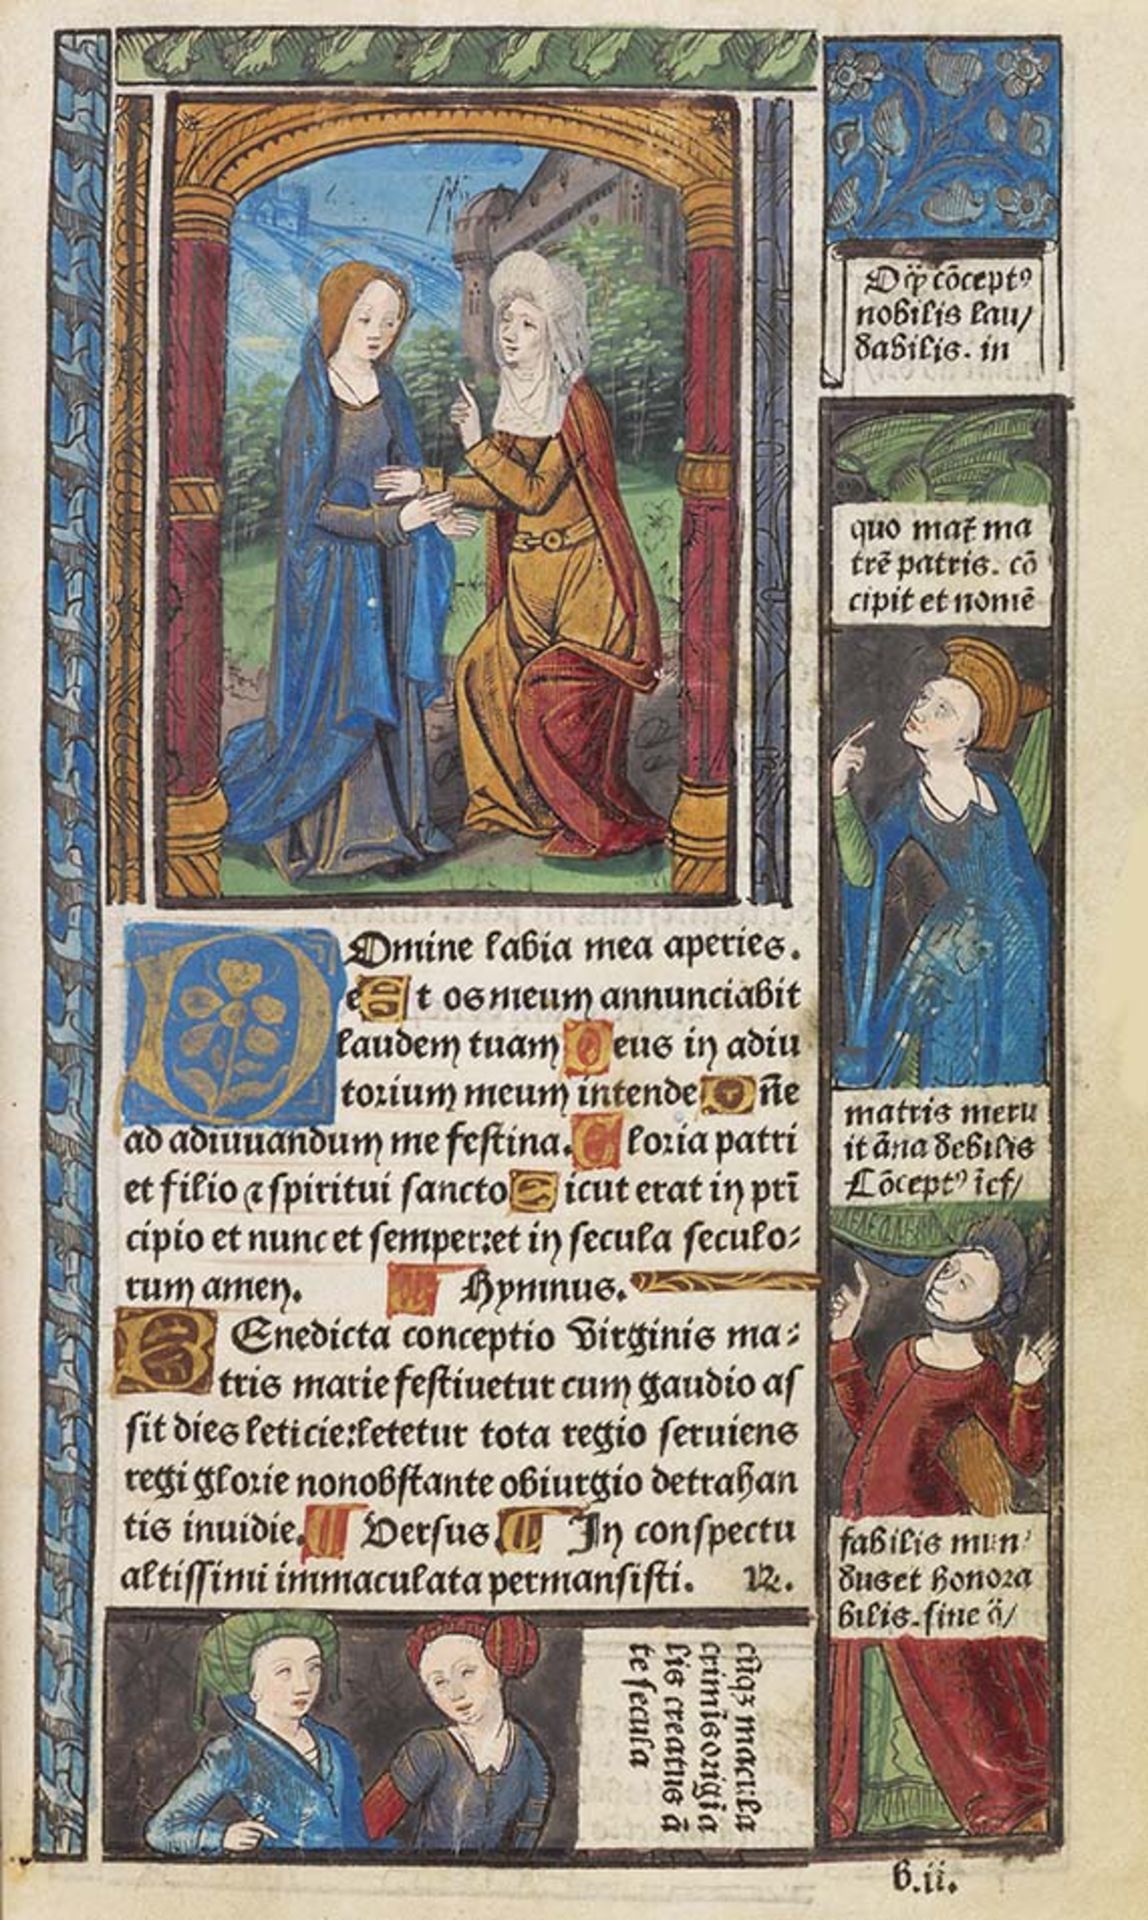 Stundenbuch - Horae ad usum Romanum (Almanach 1488-1508). Gedrucktes Stundenbuch auf